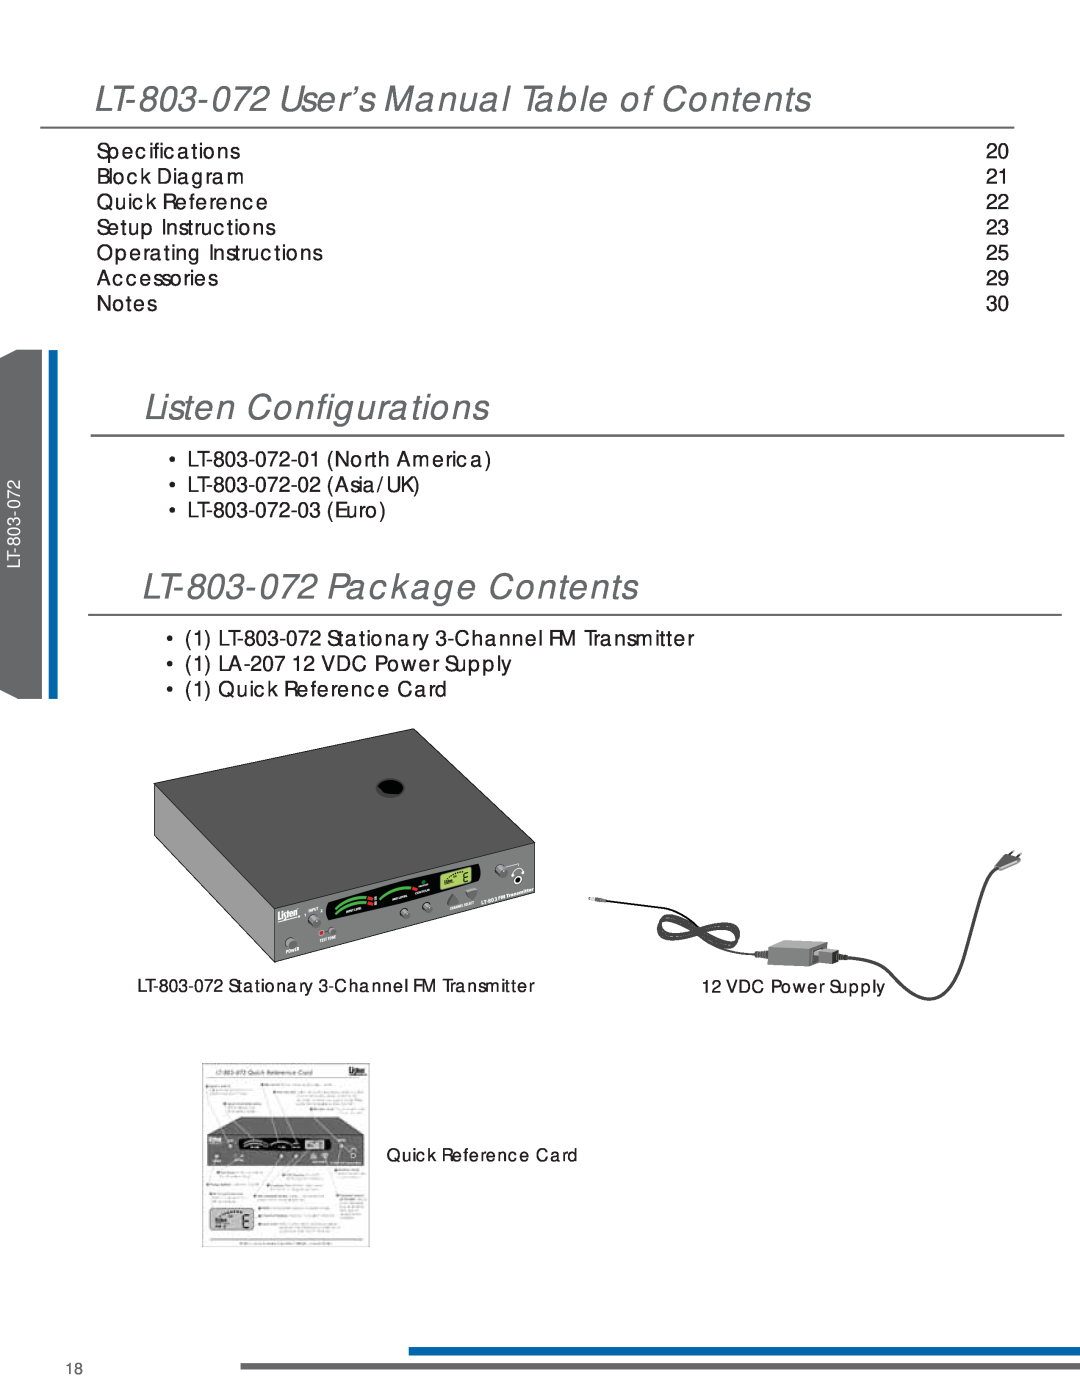 Listen Technologies LA-123 90, LP-3CV-072, LR-200-072, LA-161 manual Listen Conﬁgurations, LT-803-072Package Contents 